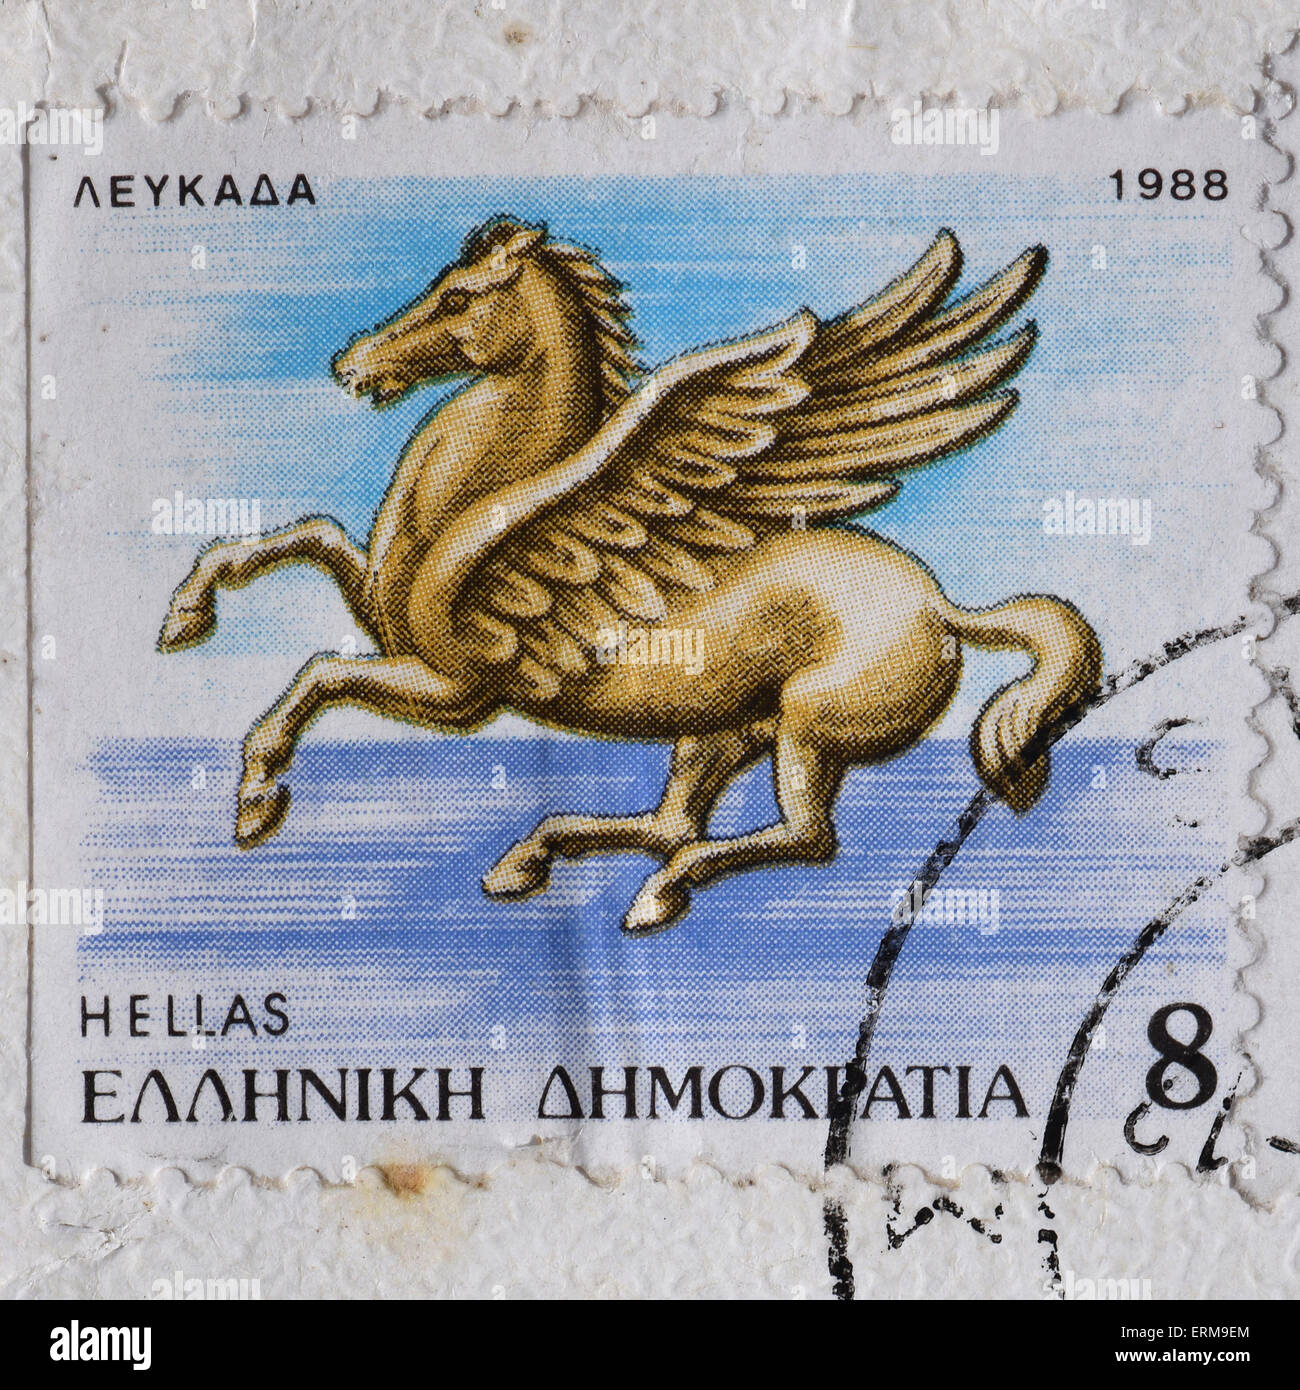 Pegasus flying horse greek mythology winged creature illustration on vintage postage stamp. Stock Photo